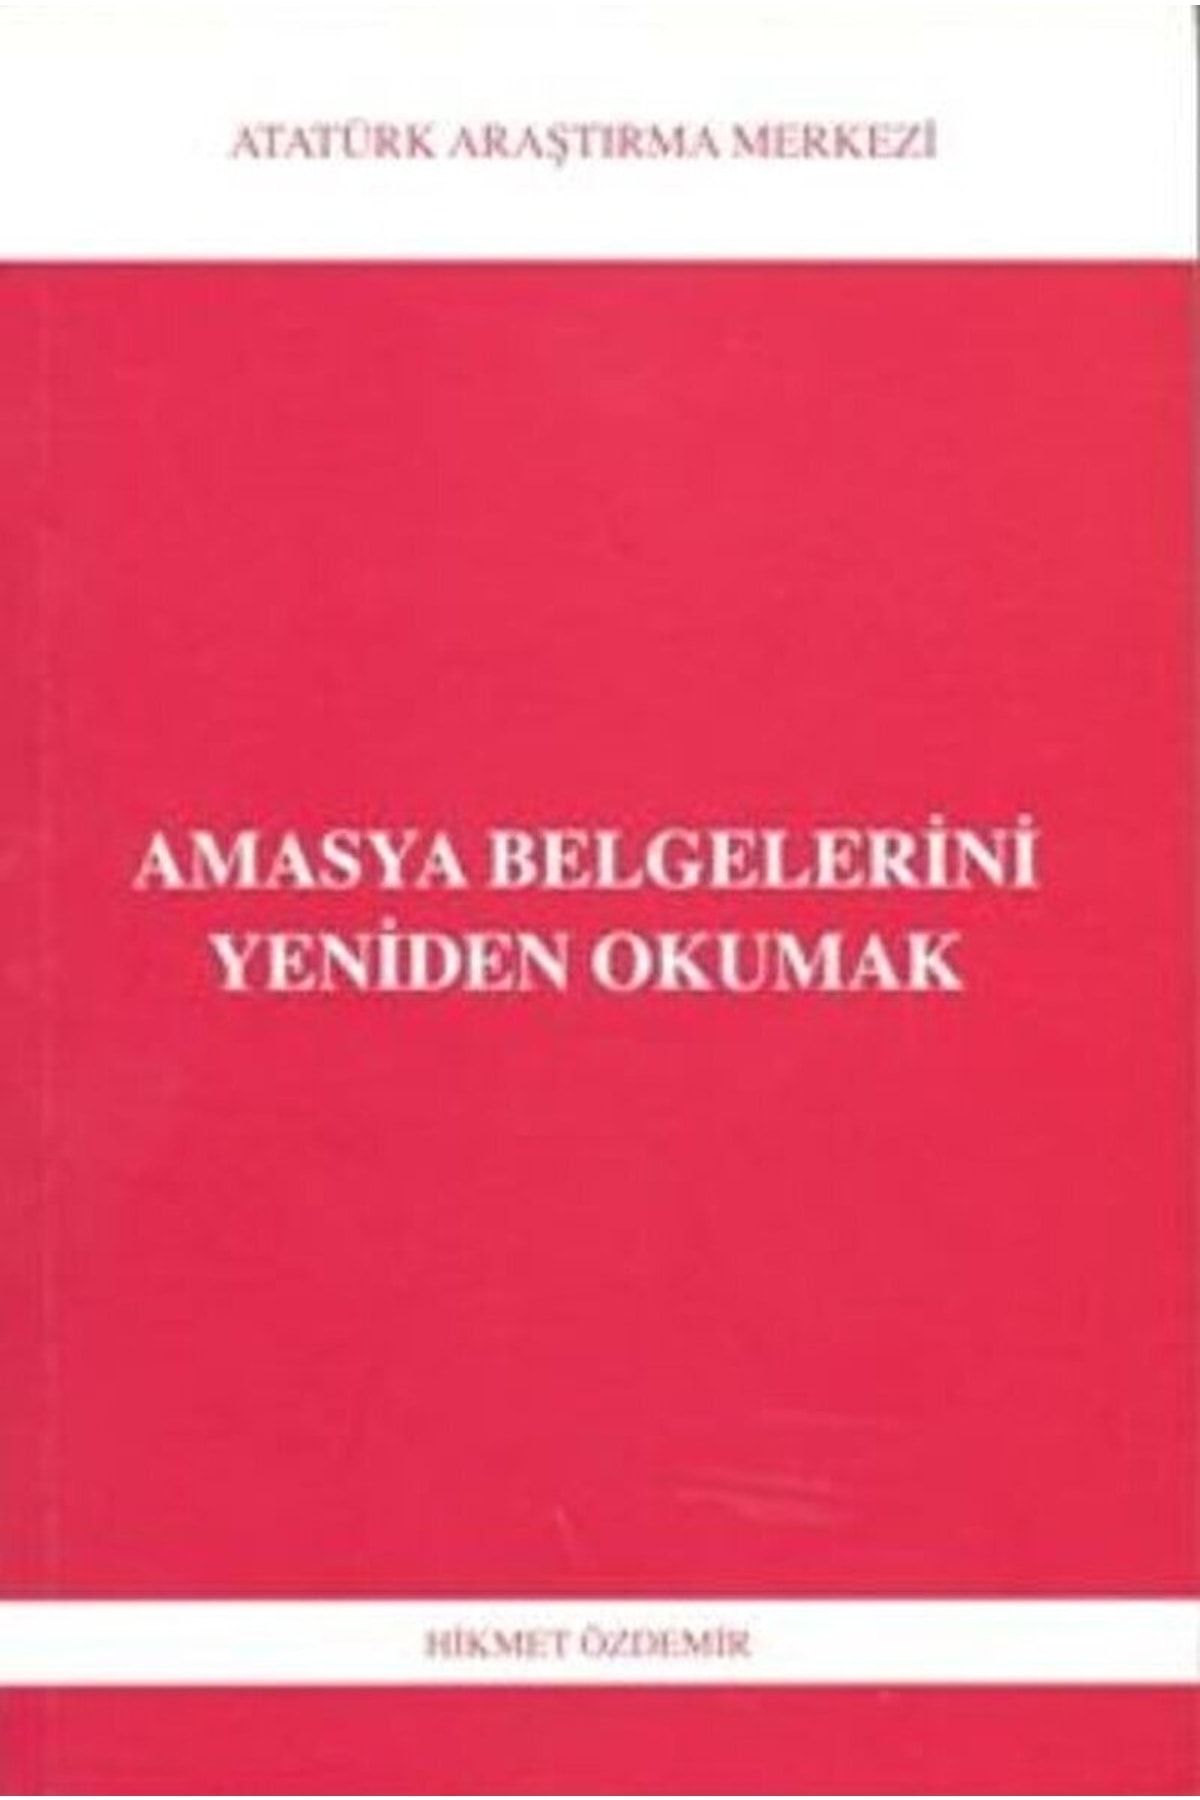 Atatürk Araştırma Merkezi Amasya Belgelerini Yeniden Okumak / Hikmet Özdemir / / 9789751622822